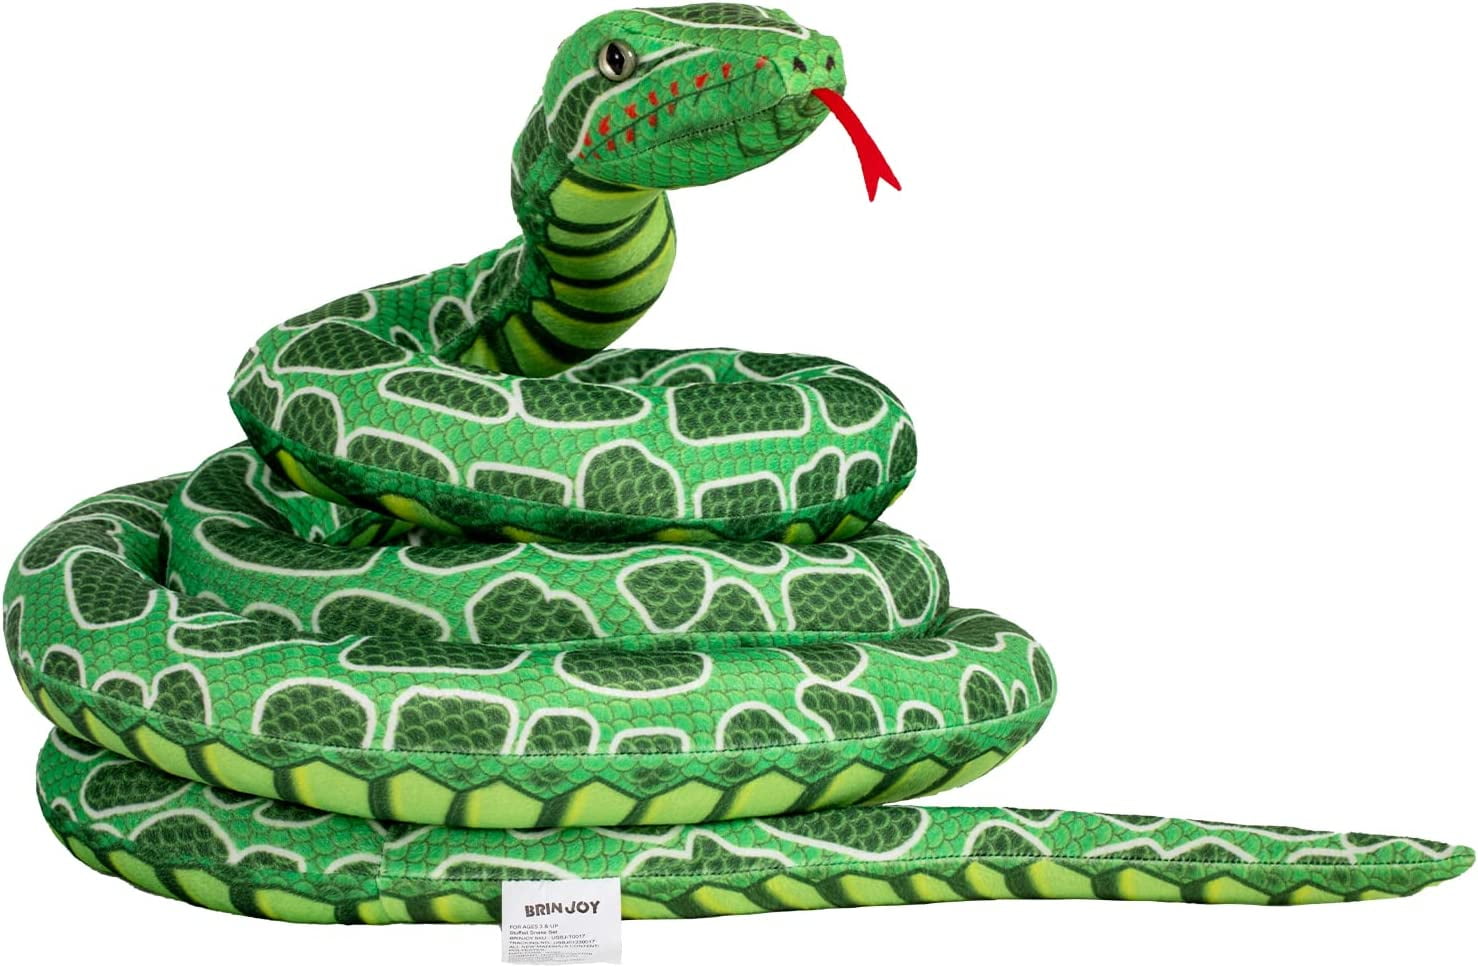 BRINJOY Giant Snake Stuffed Animal, 149 inch Large Snake Lifelike